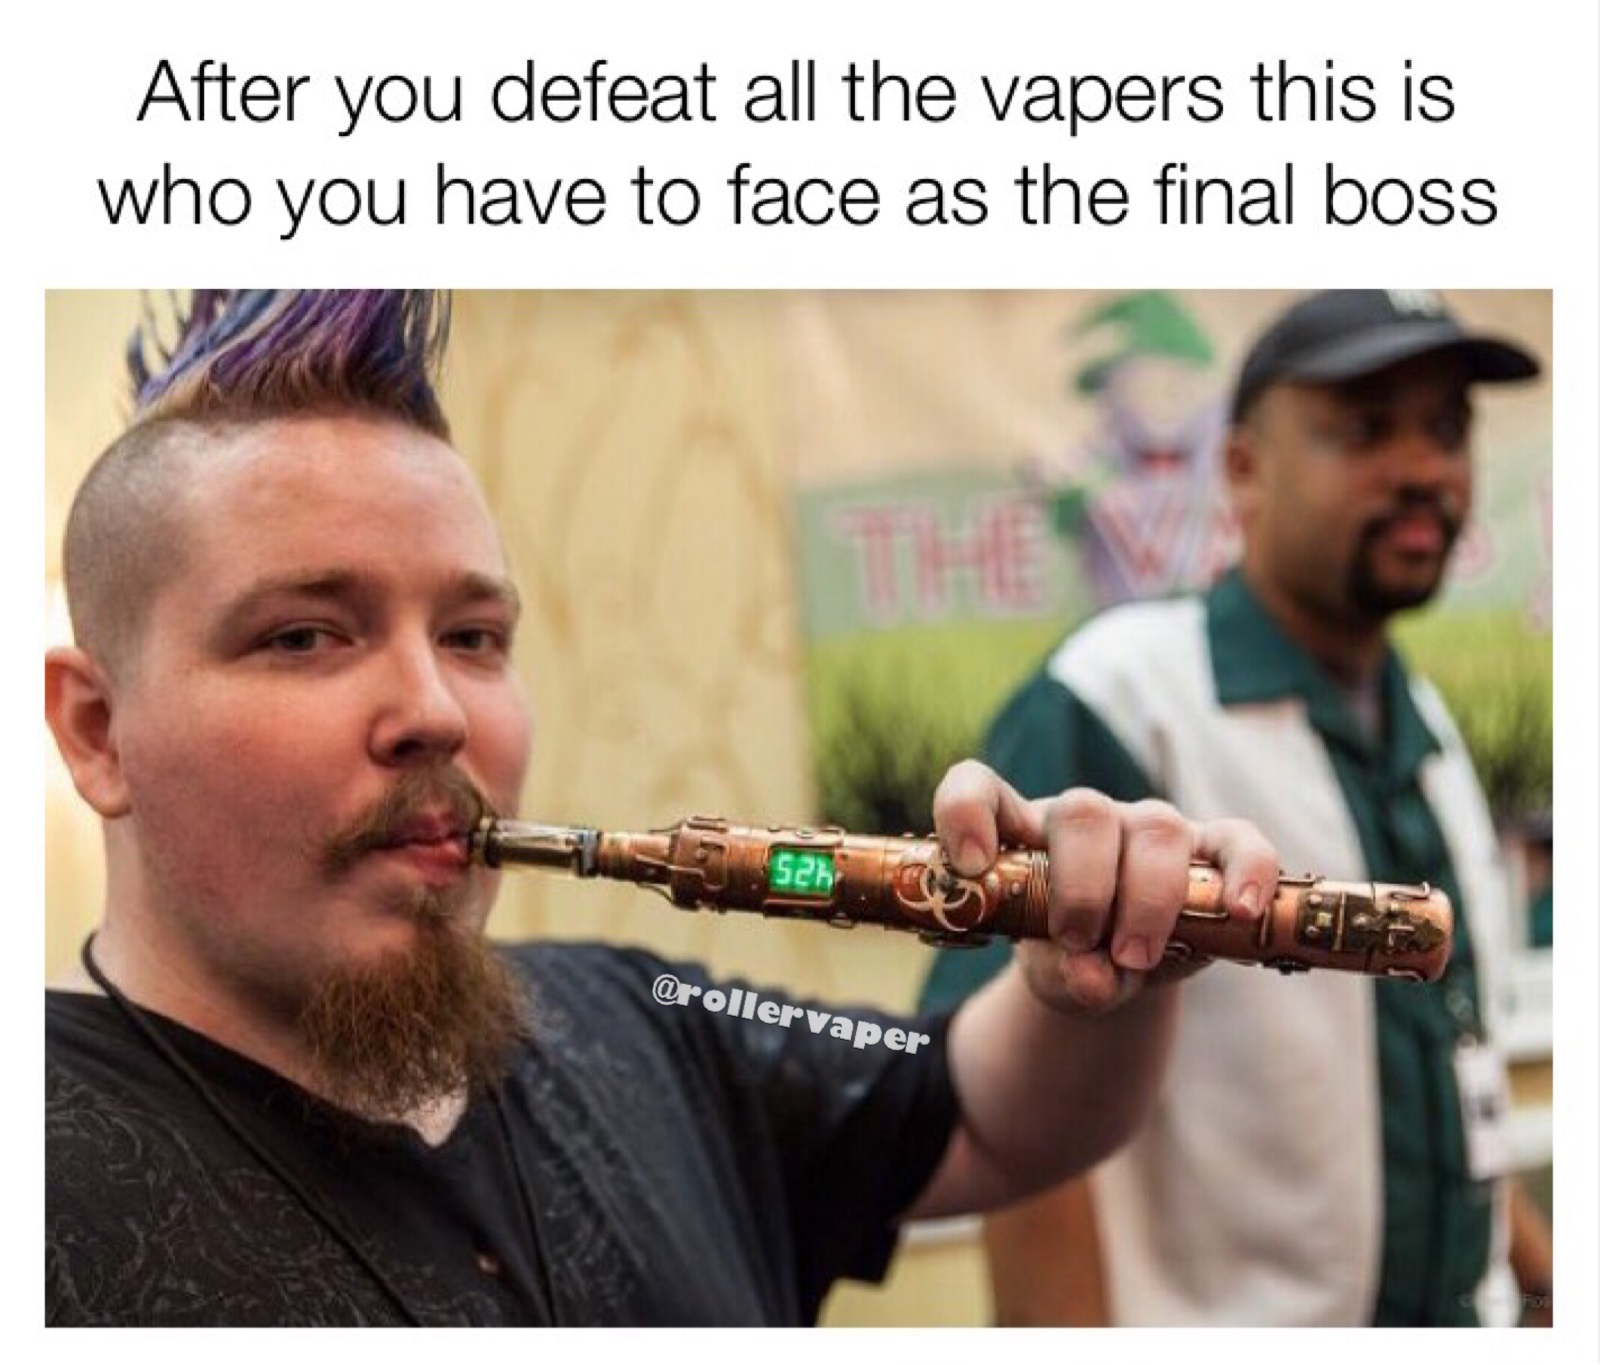 The final boss vape